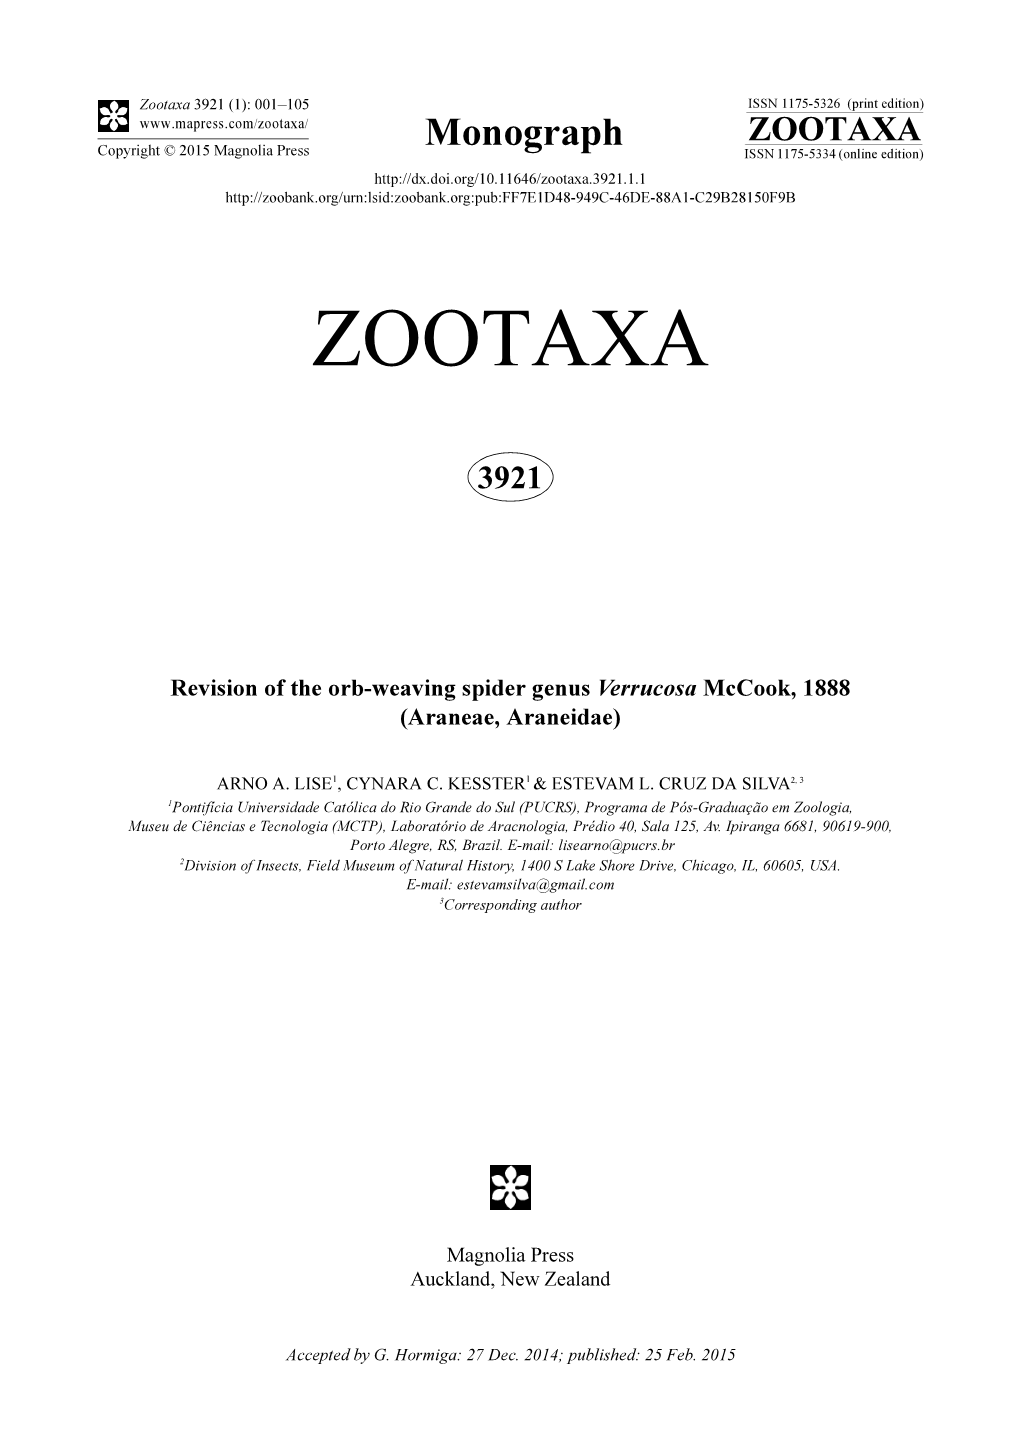 Revision of the Orb-Weaving Spider Genus Verrucosa Mccook, 1888 (Araneae, Araneidae)